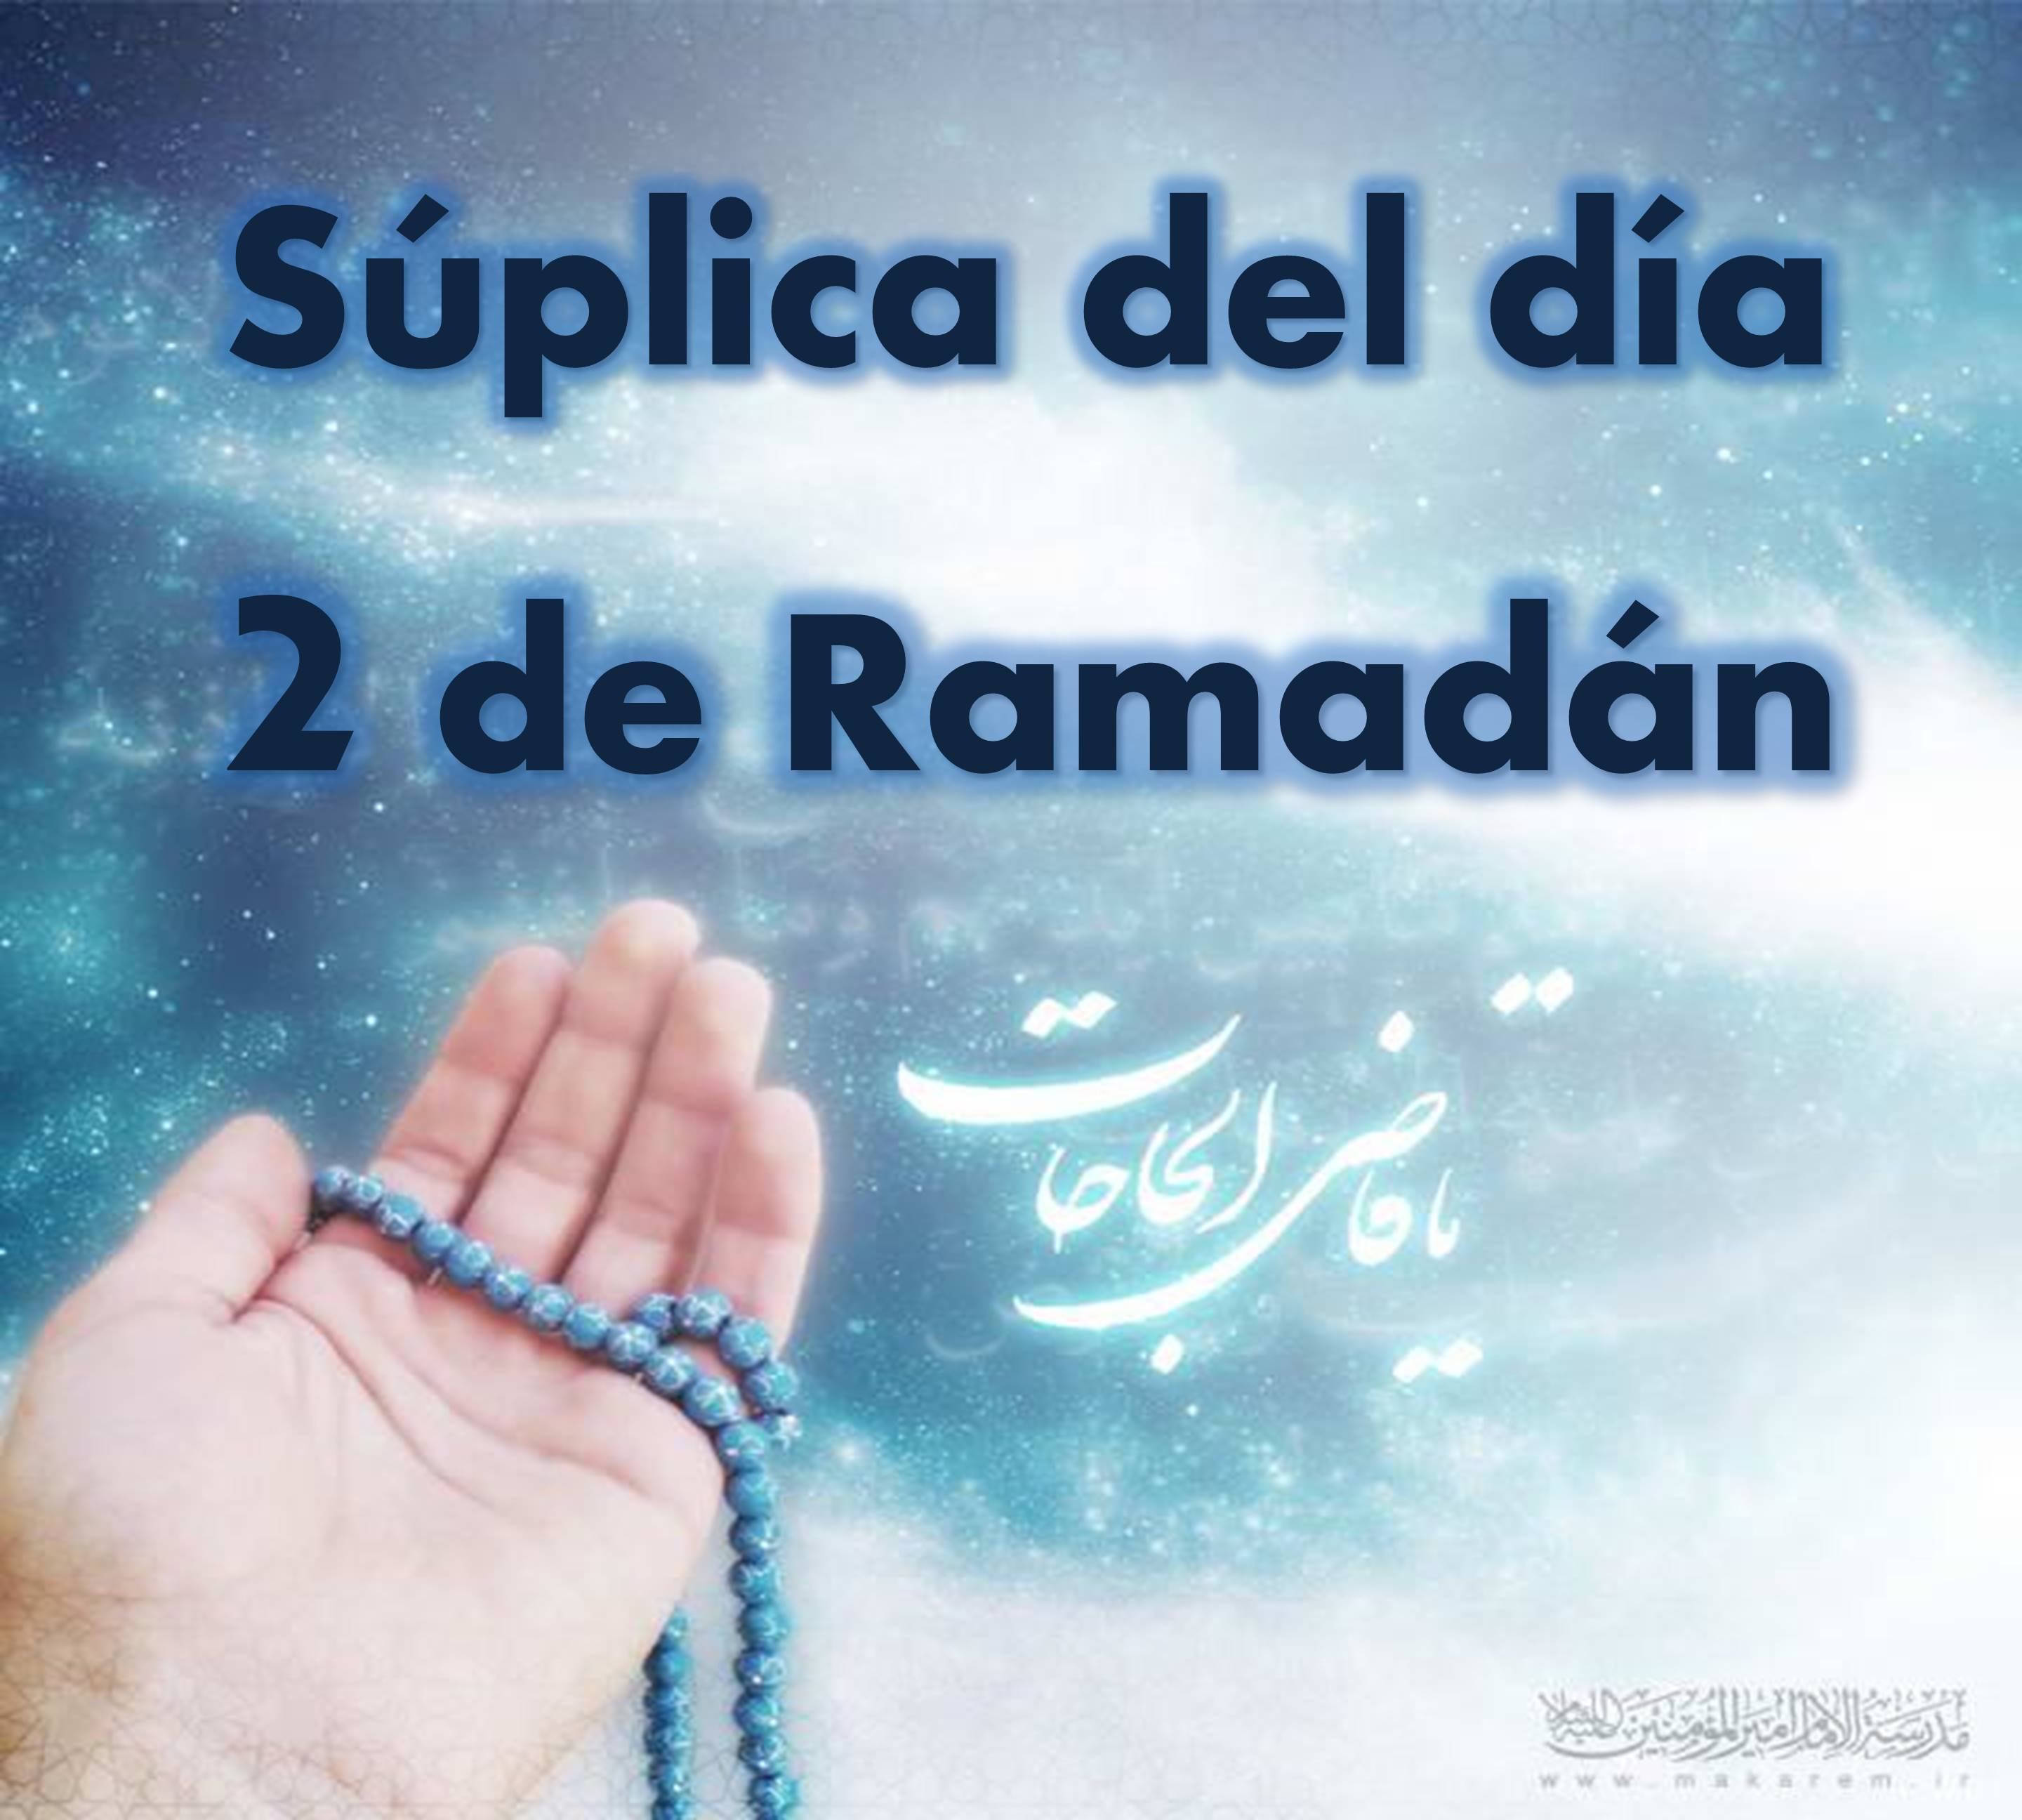  Súplica del segundo día de Ramadán comentada por el Ayatolá Makarem Shirazi